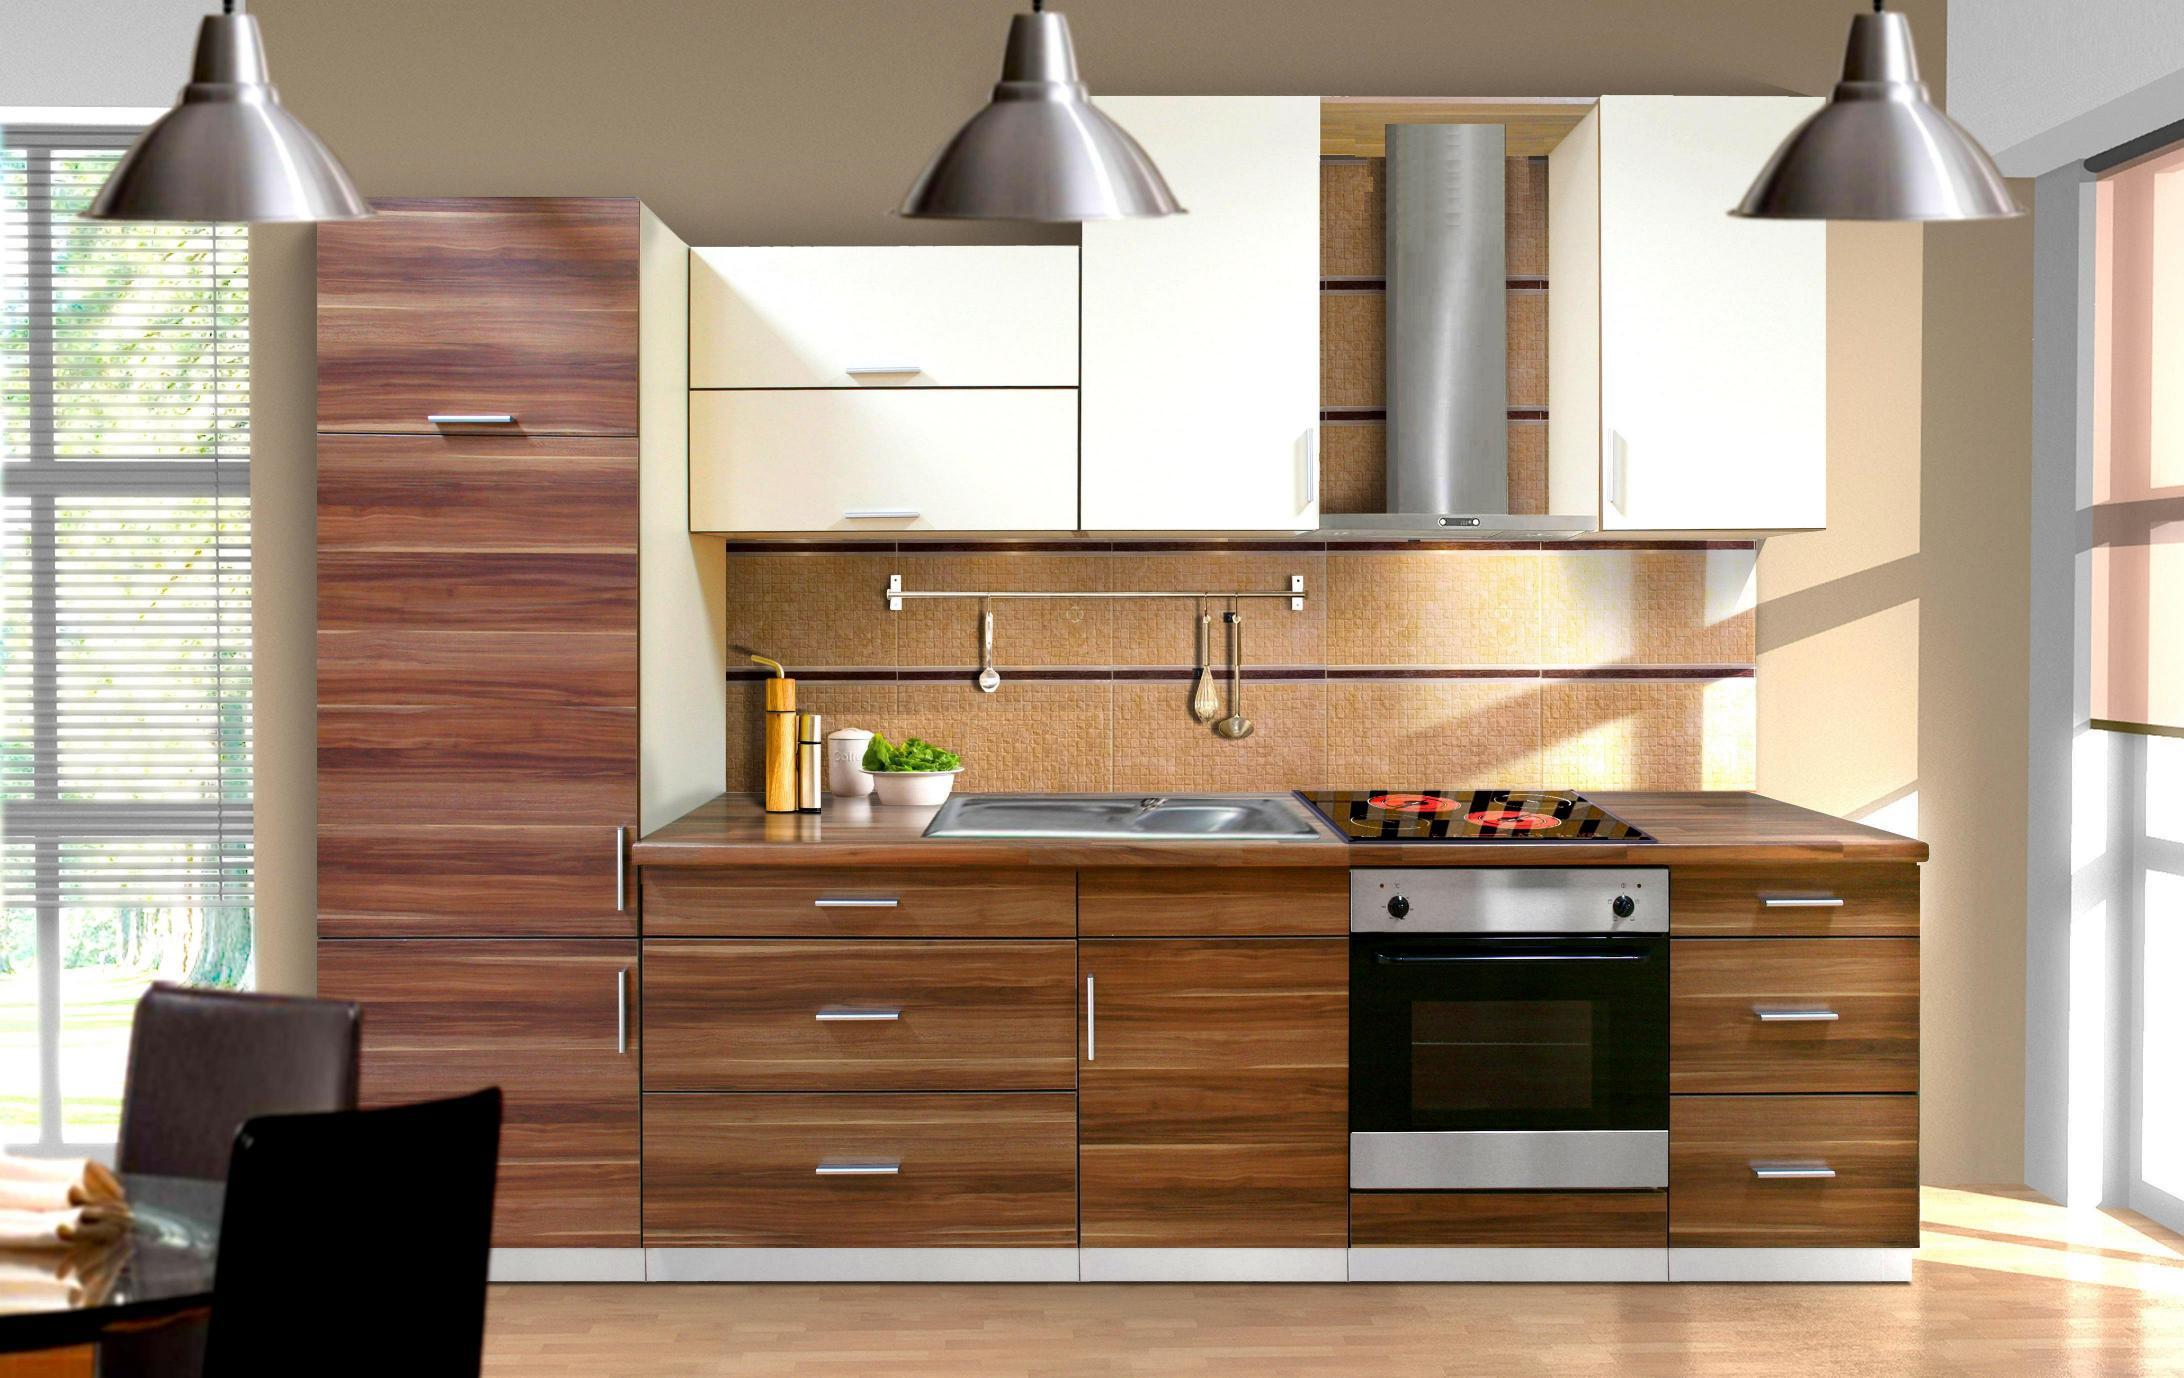 kitchen cabinet ideas modern photo - 9